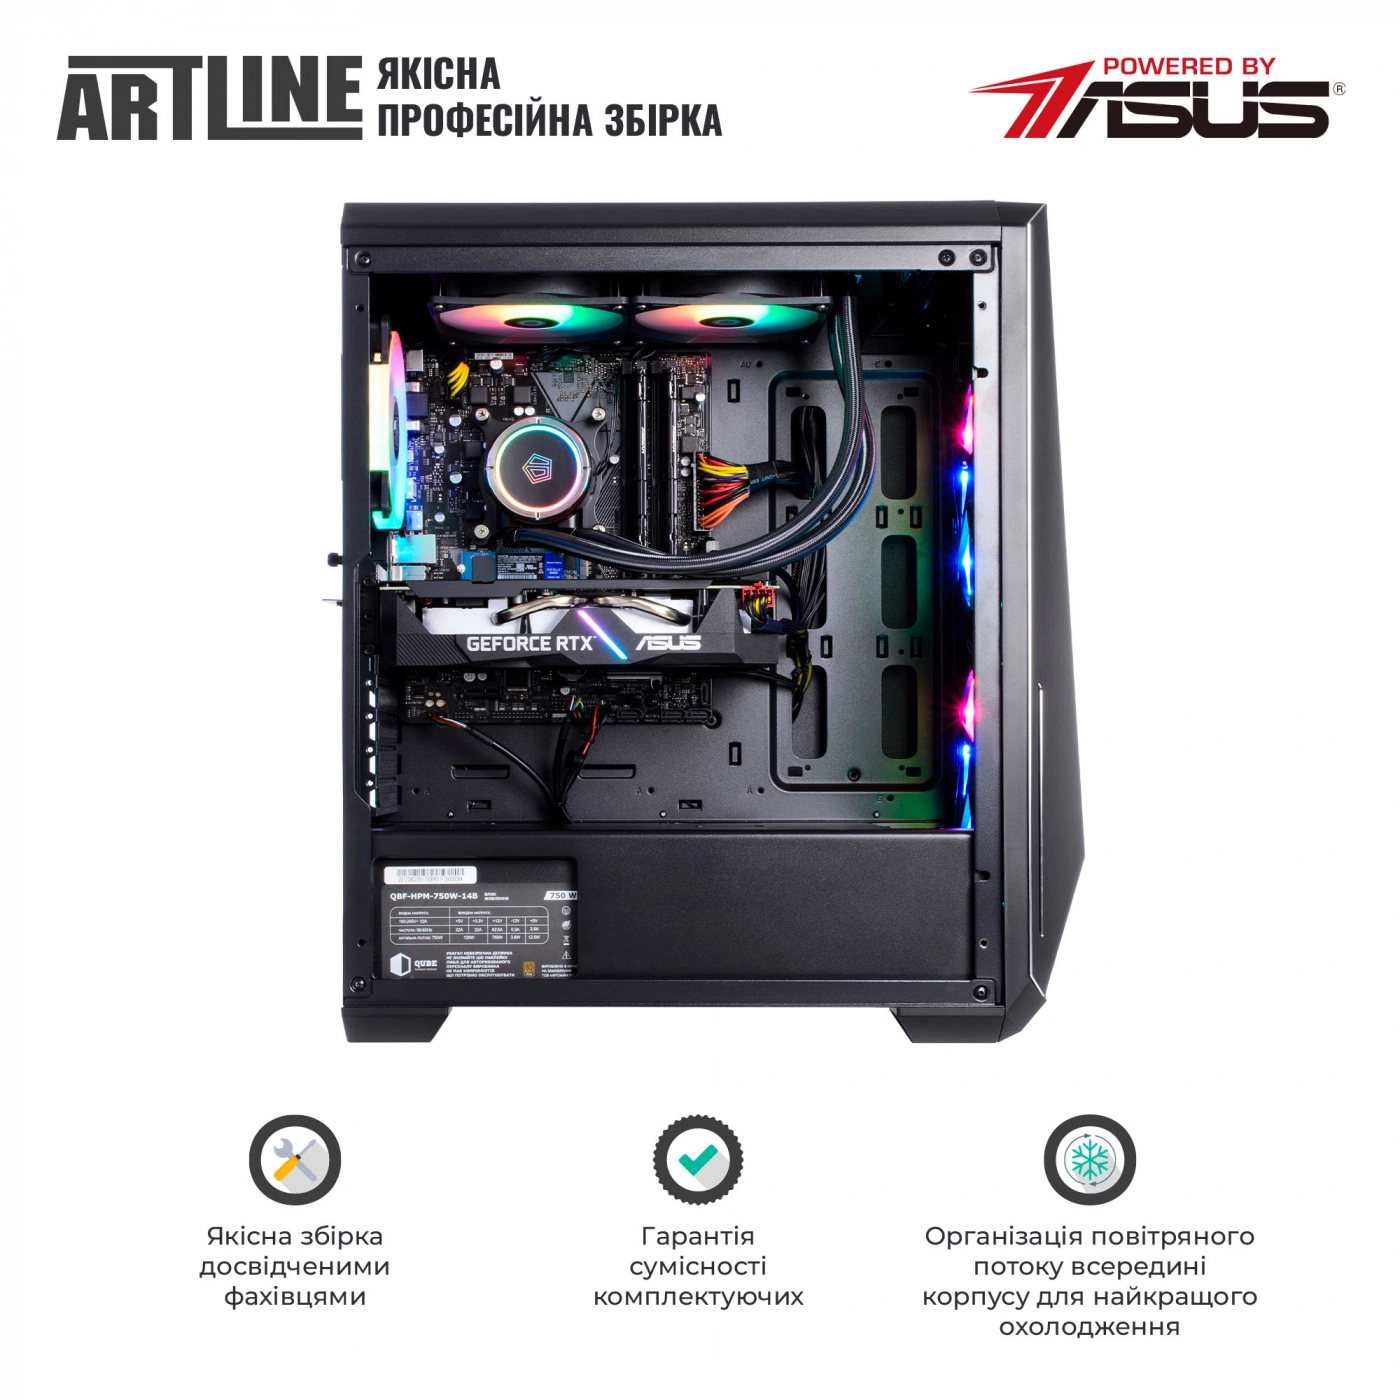 Купить Компьютер ARTLINE Gaming X77v53 - фото 8